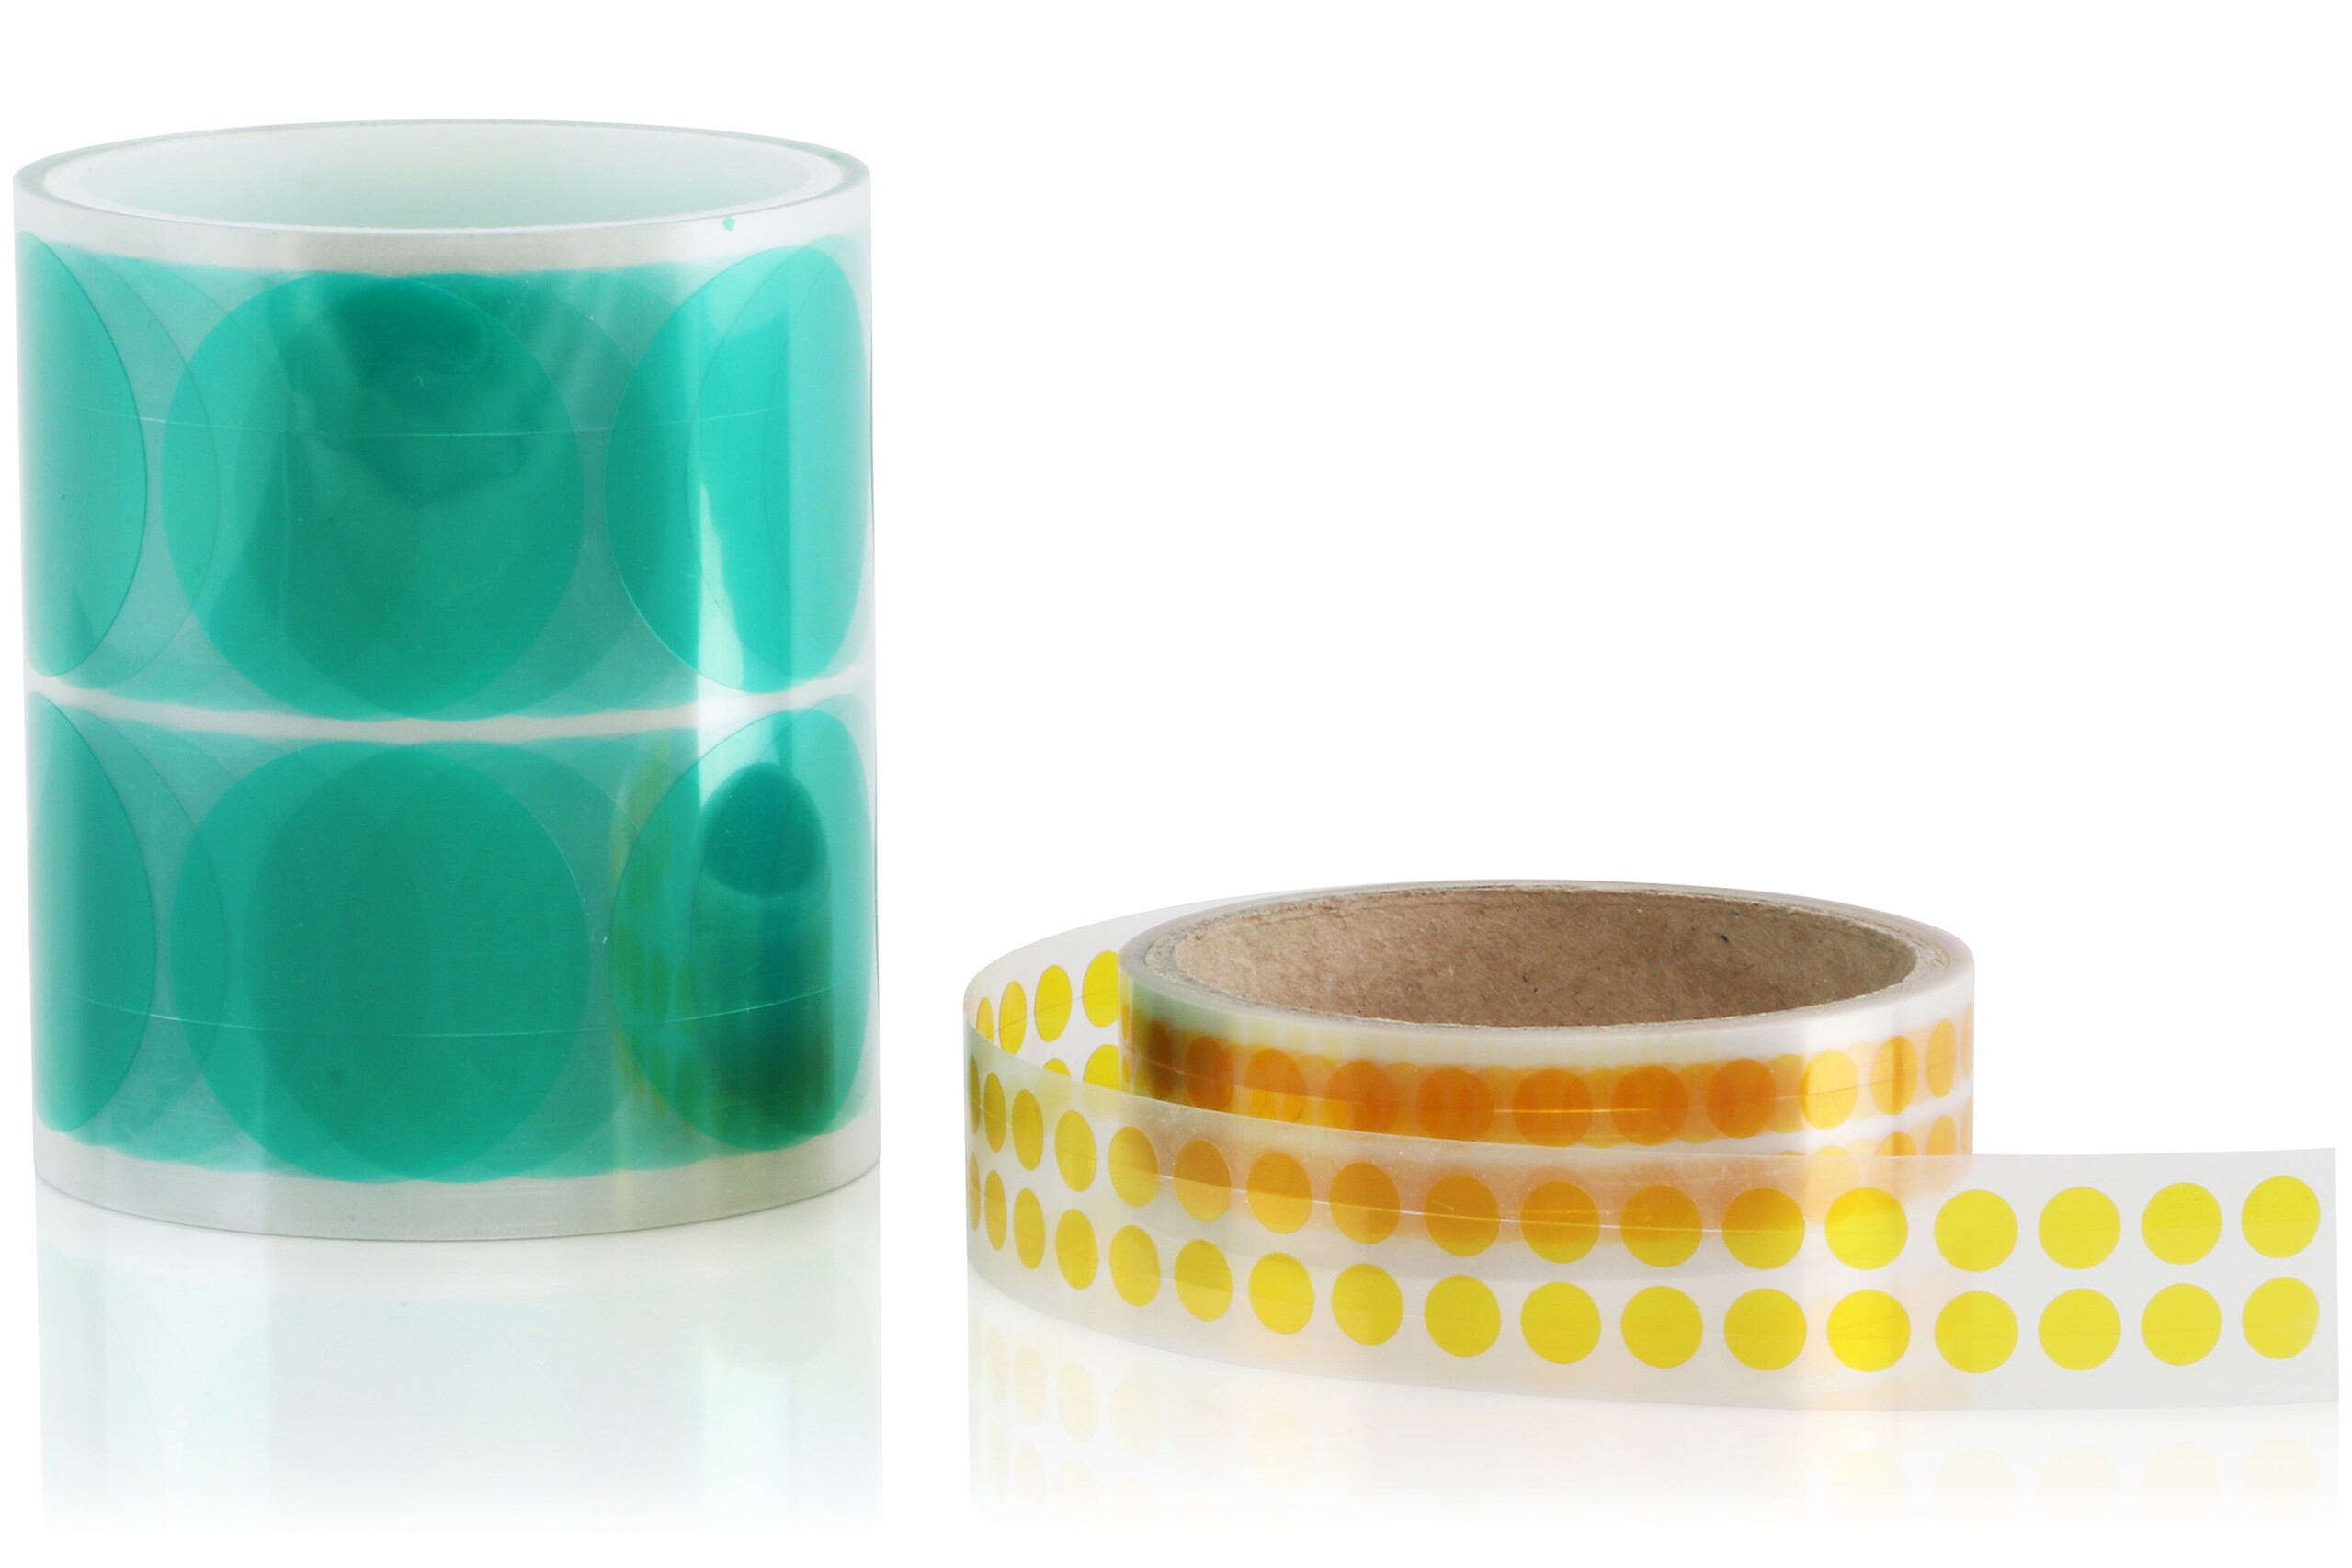 Deux rouleaux de pièces découpées rondes, transparentes en vert et transparentes en jaune.